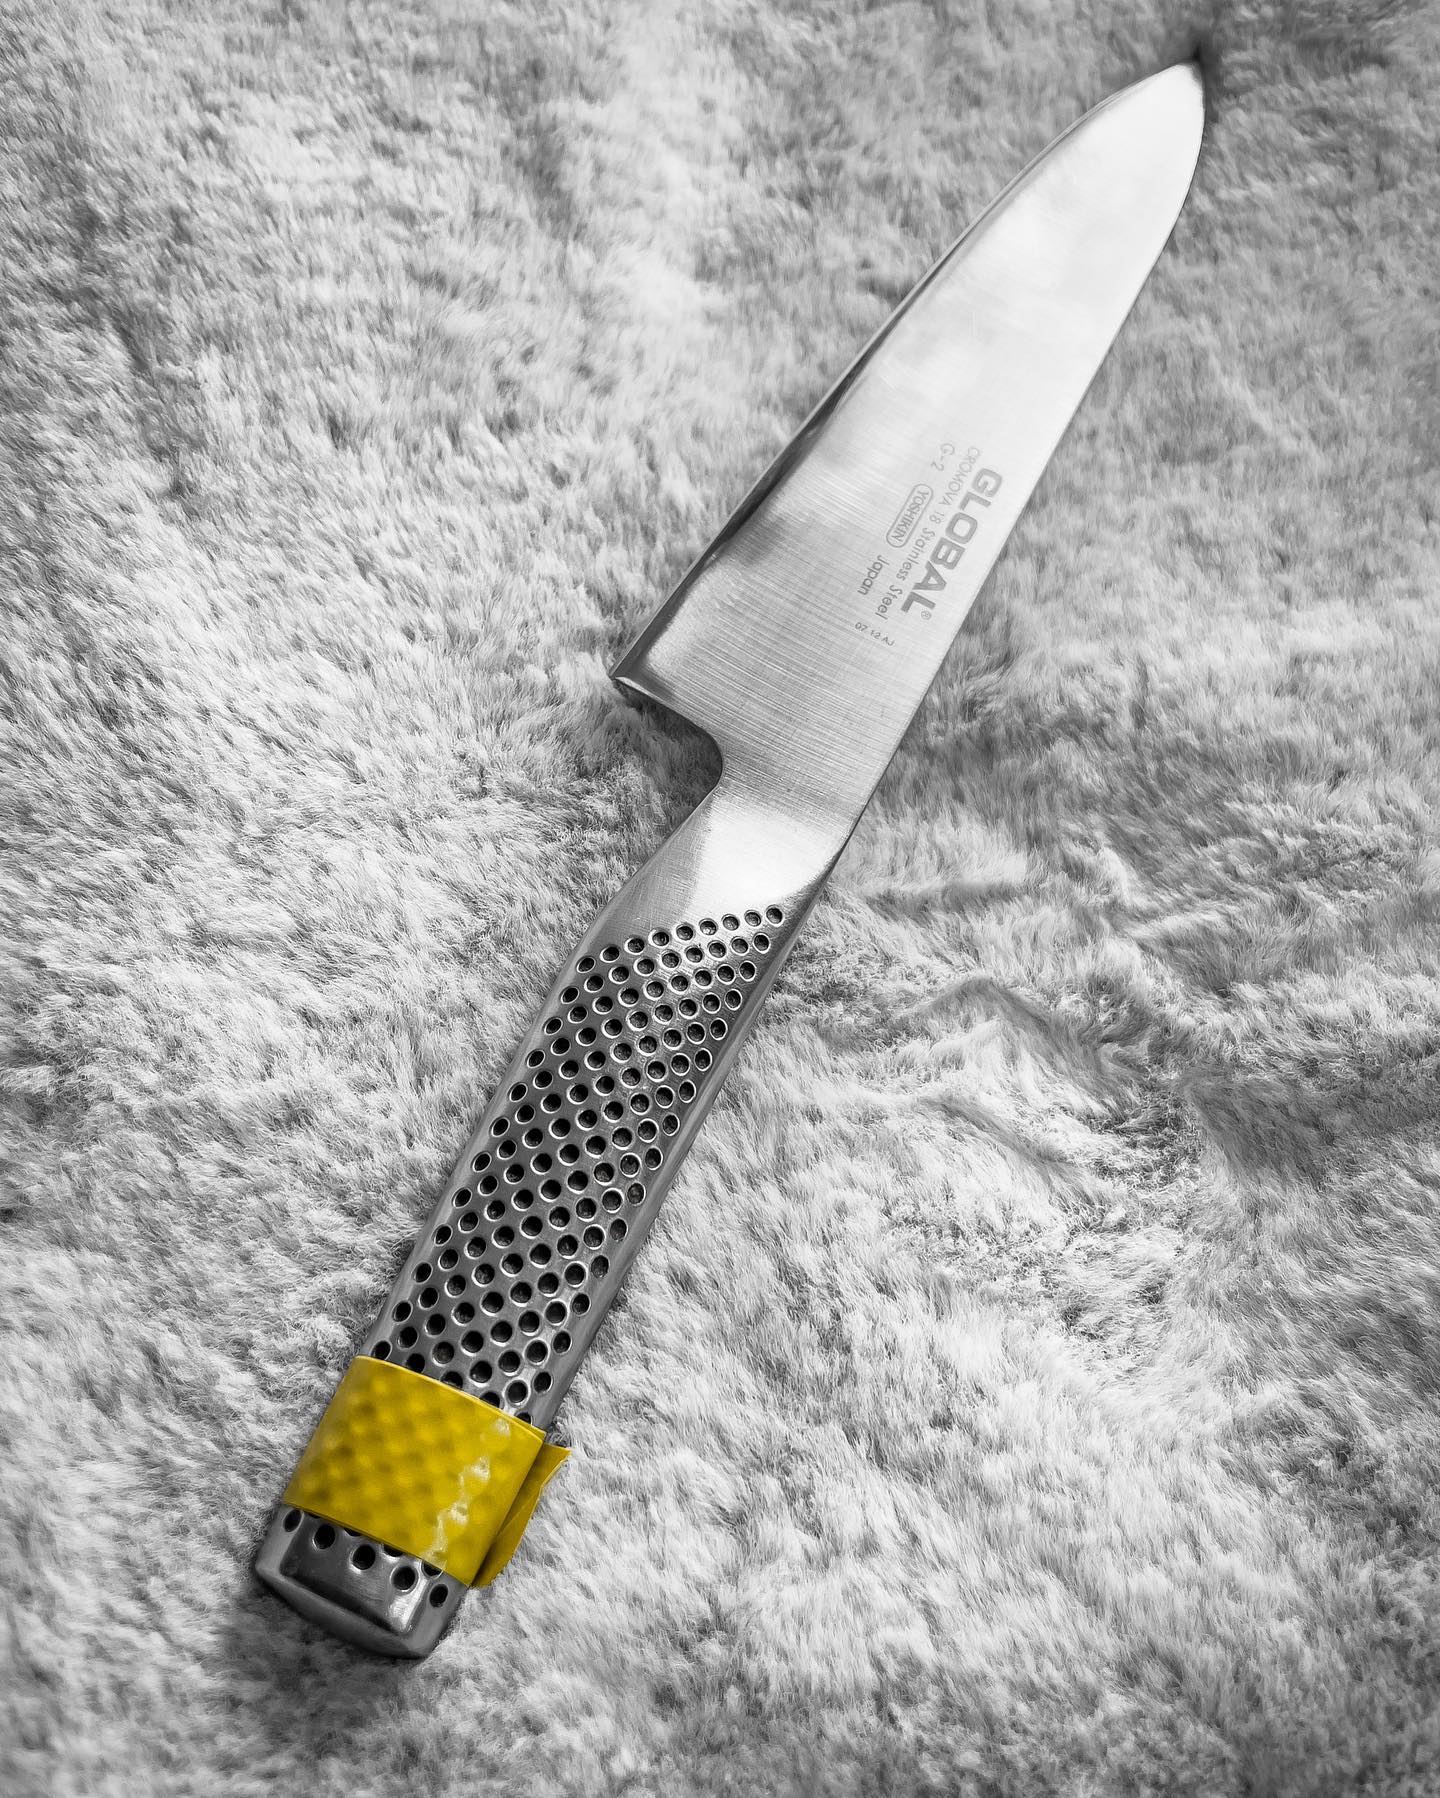 Listo el afilado para el cuchillo de Ignacia. Ahora lo dejamos bien cuidado mientras pasa por el.

.
.
.
#teloafilo #afilado #cuchillo #piedra #filo #cocina #cuchillosjaponeses #cocinero #restaurant #chef #santiago #chile #instachile #chilegram #corte #afilador #gastronomia #whetstone #sharpening #knives #edge #sharp #grind